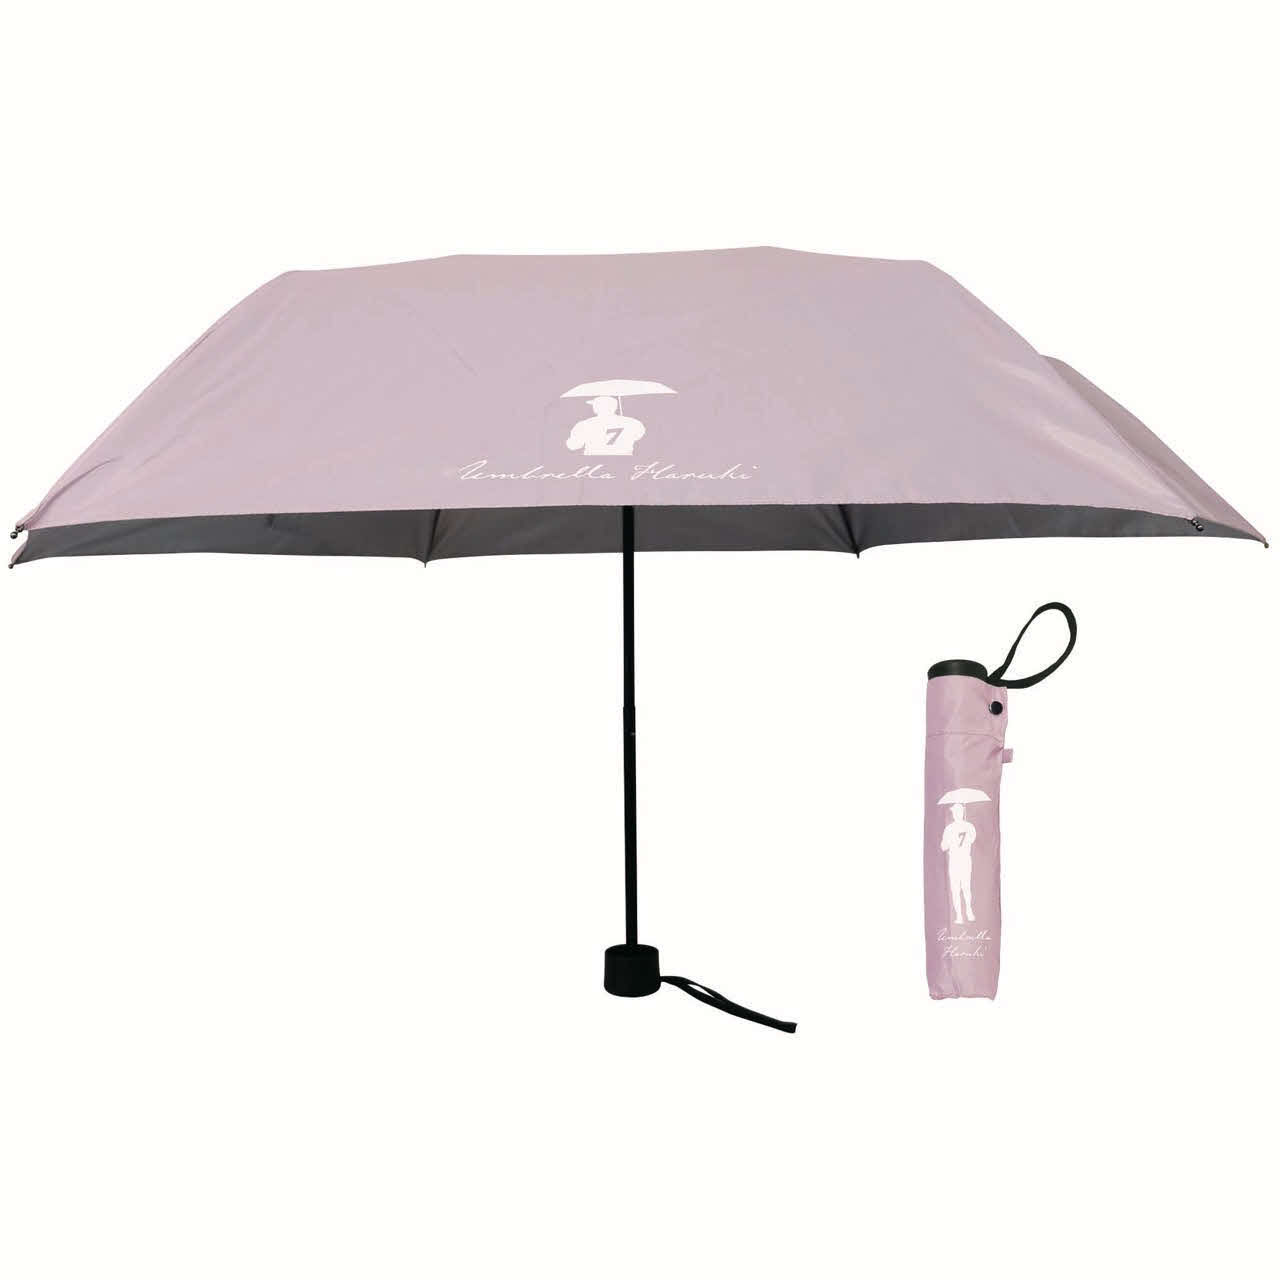 日本ハム西川遥輝がグラウンドで傘を差す姿「アンブレラハルキ」がイメージされたデザインの折りたたみ傘（球団提供）